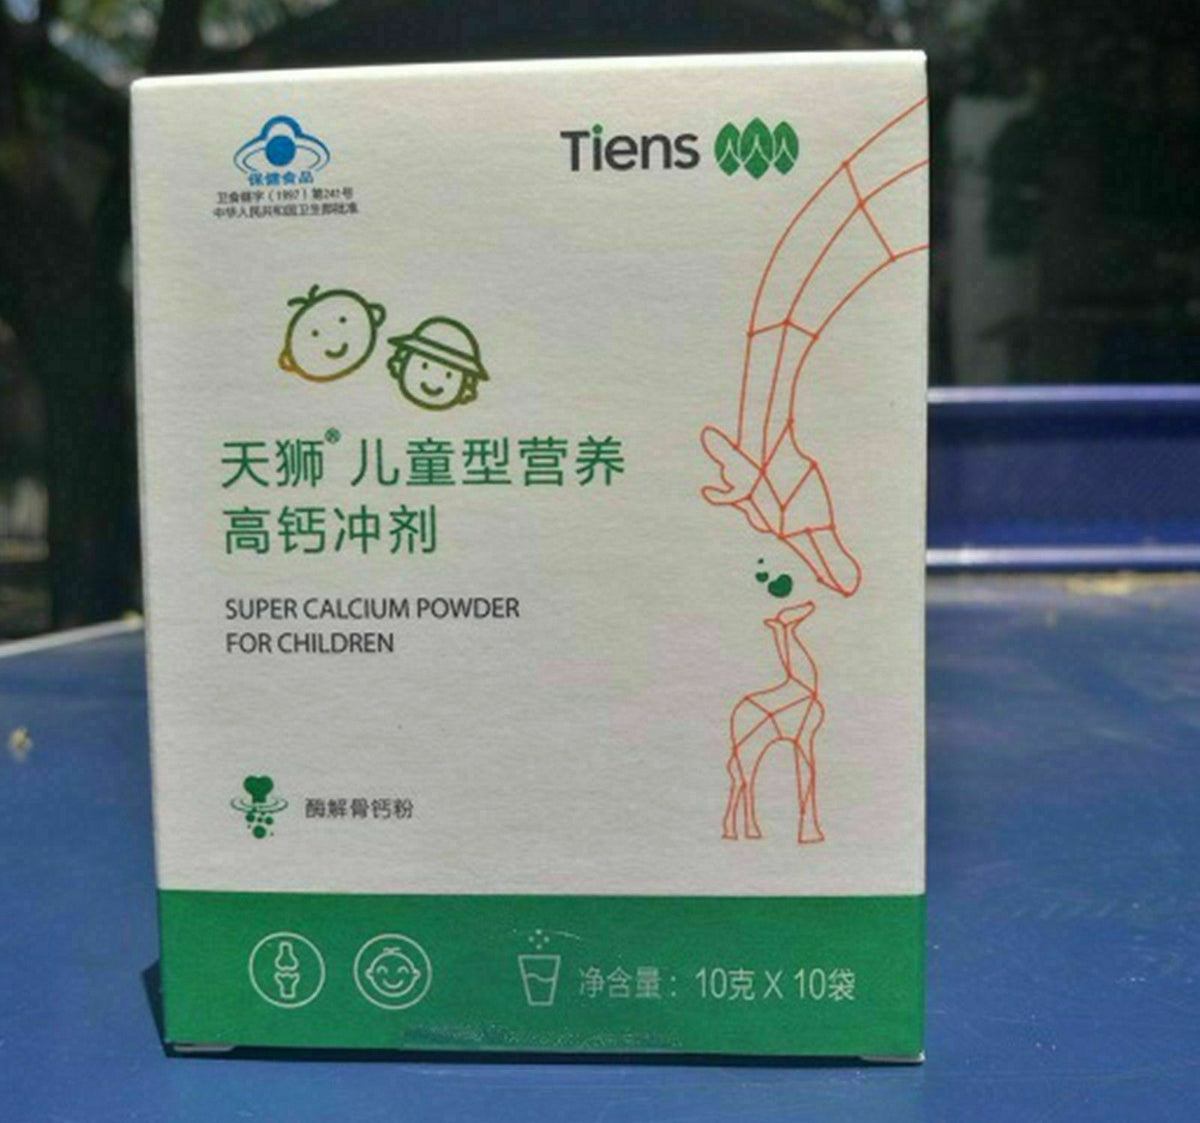 Details about 3 Boxes TIENS(Tianshi ) Super Calcium Powder For Children Fresh